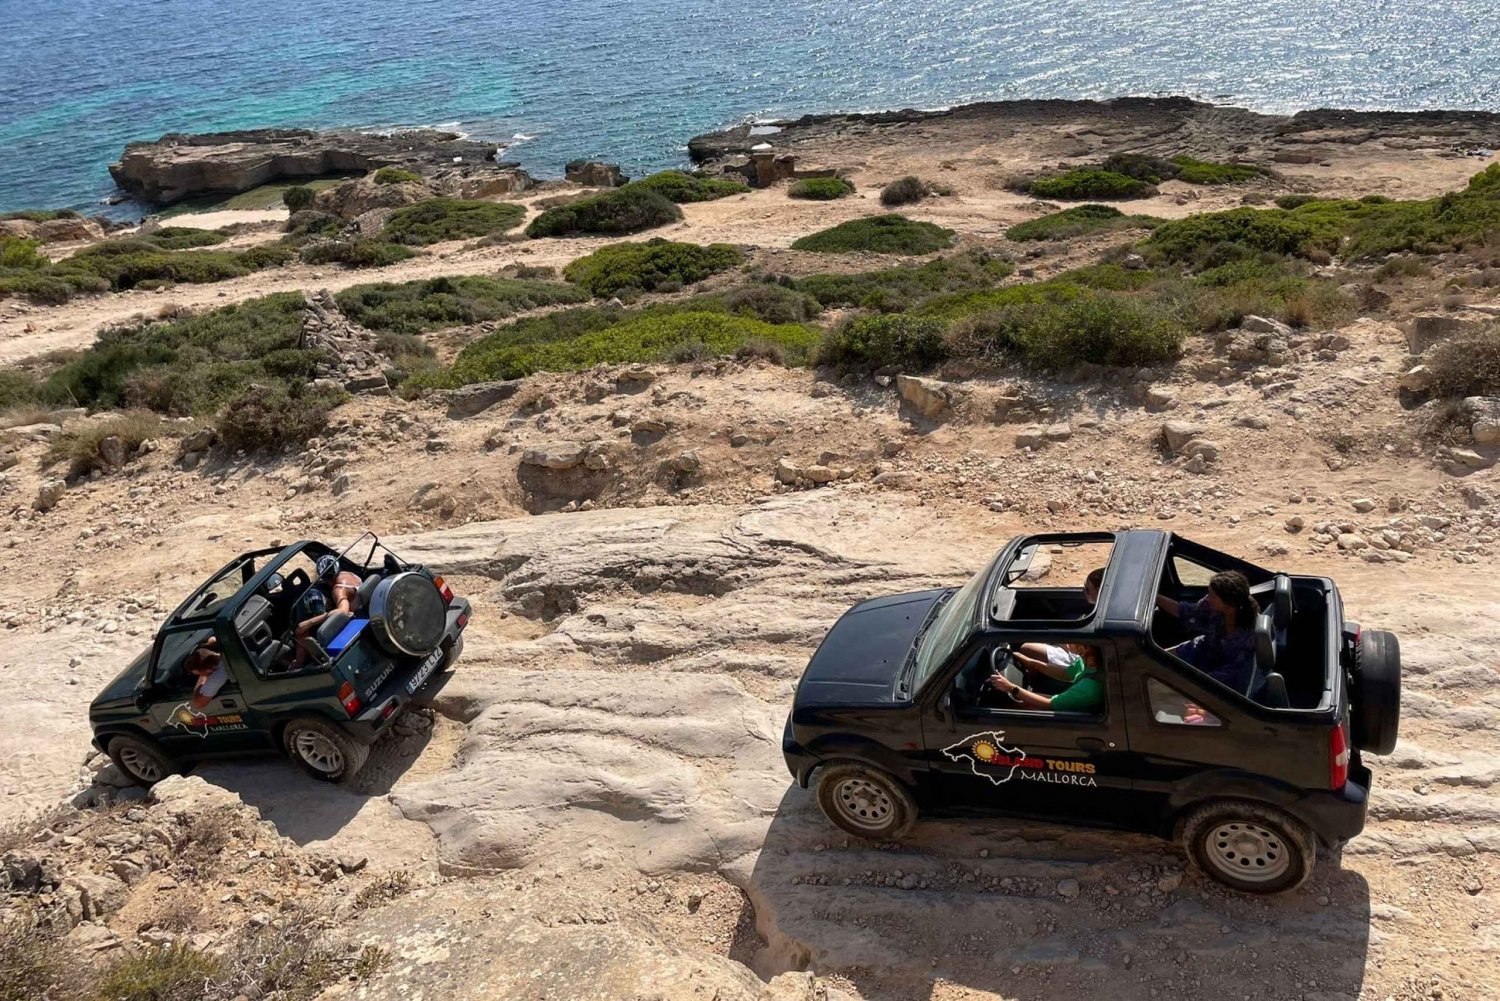 Mallorca: Passeio de Jeepsafari 4x4 sem motorista